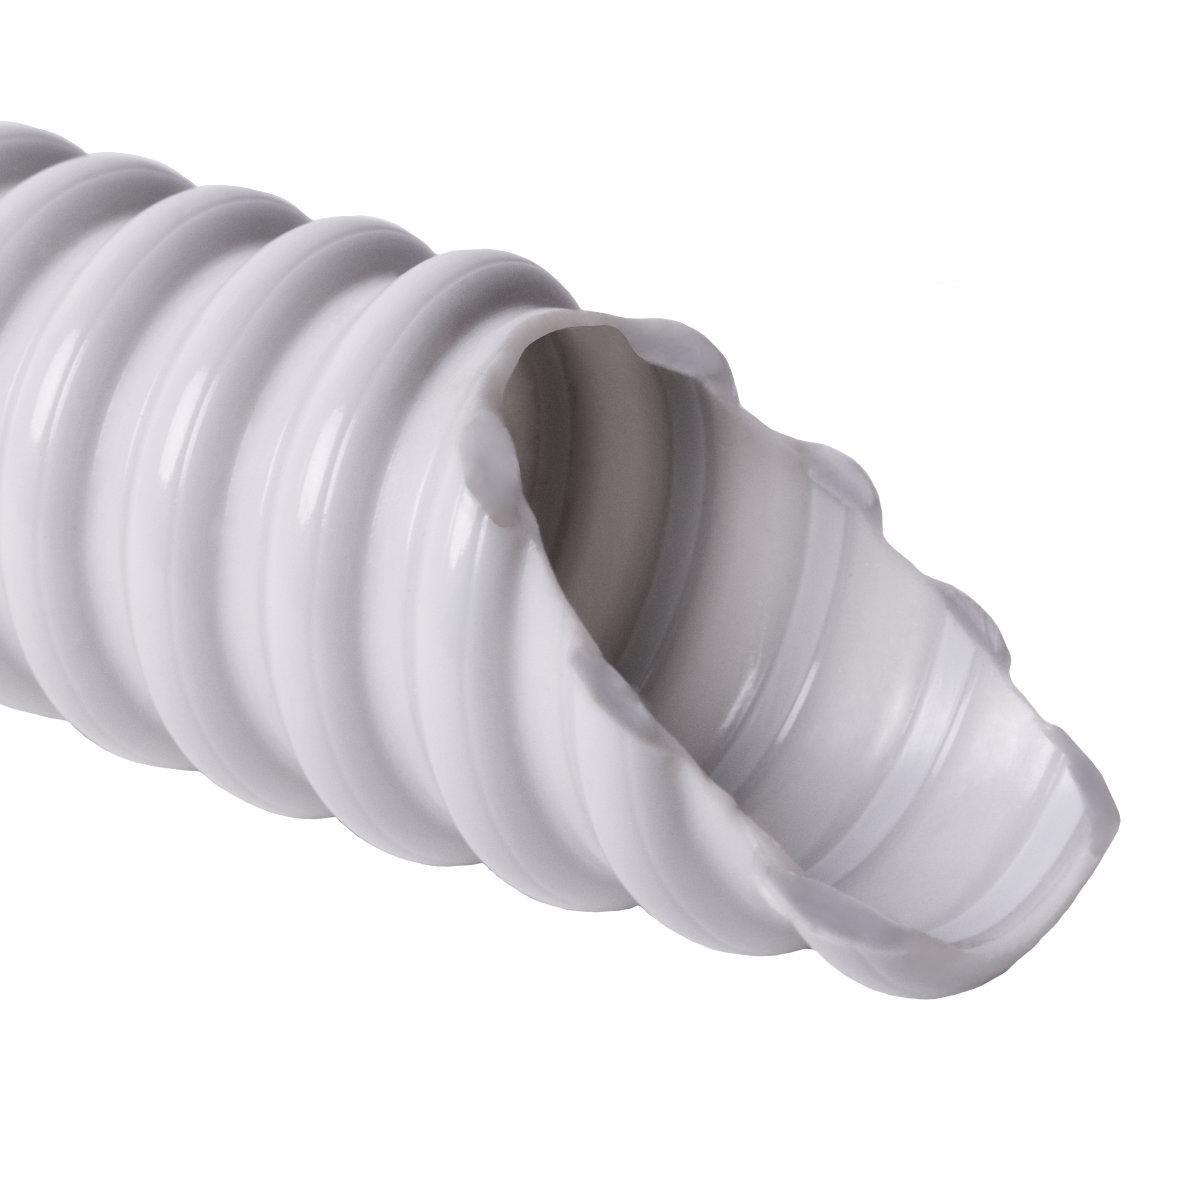 Труба гофрована електромонтажна армована спираллю SPIROFLEX самозагасаюча; 320 N/5см / 5 см; Ø20мм; твердий ПВХ; світло-сіра